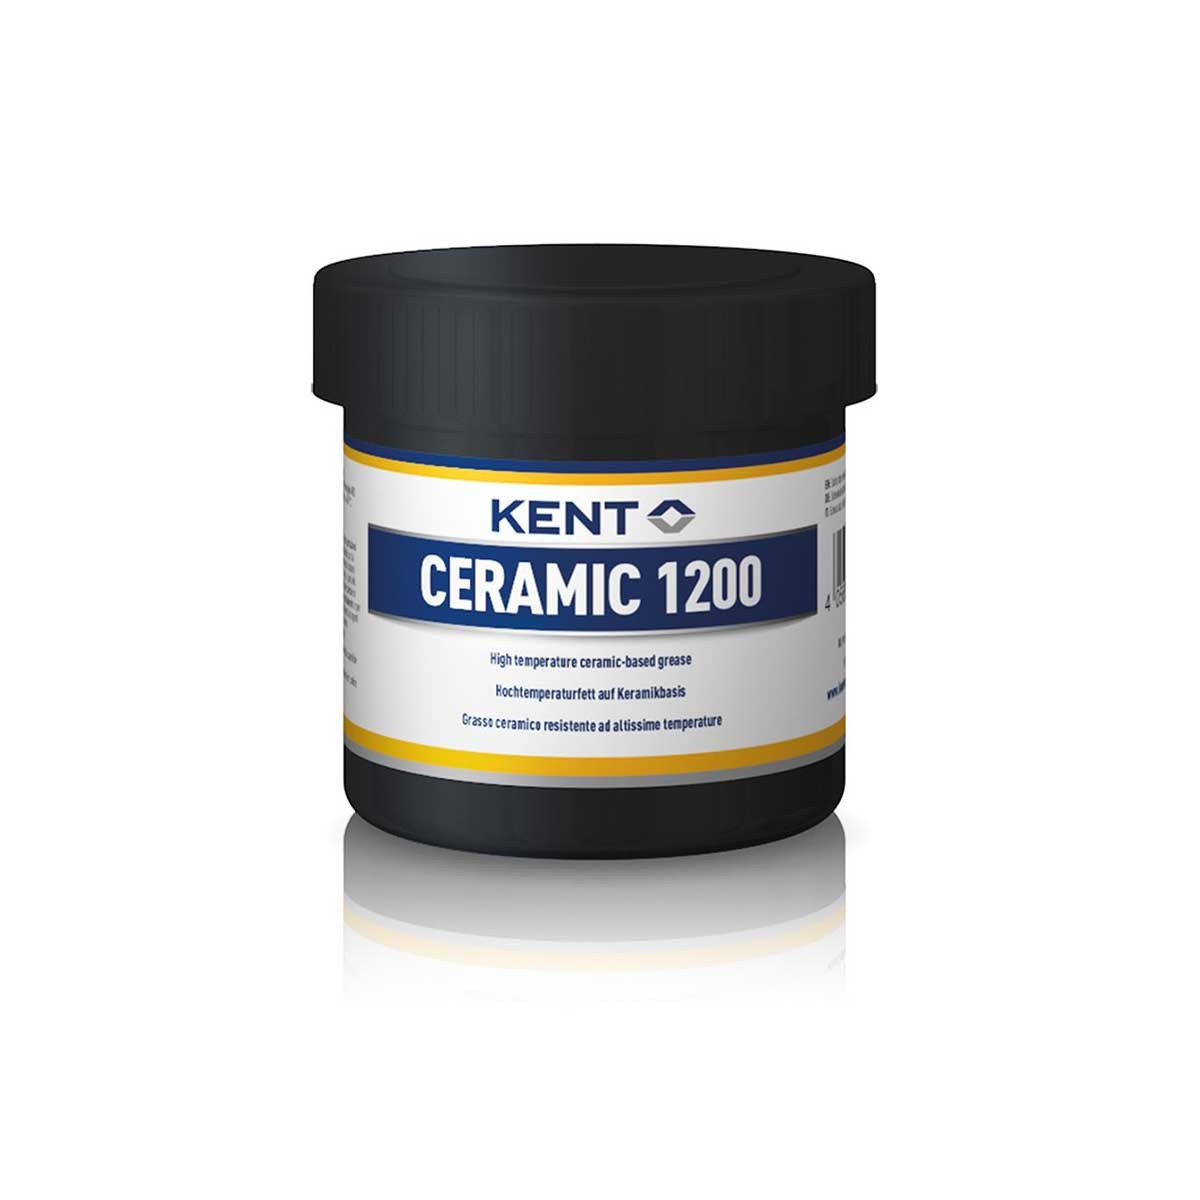 Kent Ceramic 1200 Hochtemperaturfett - Dose 200g ET226 - Comptoir